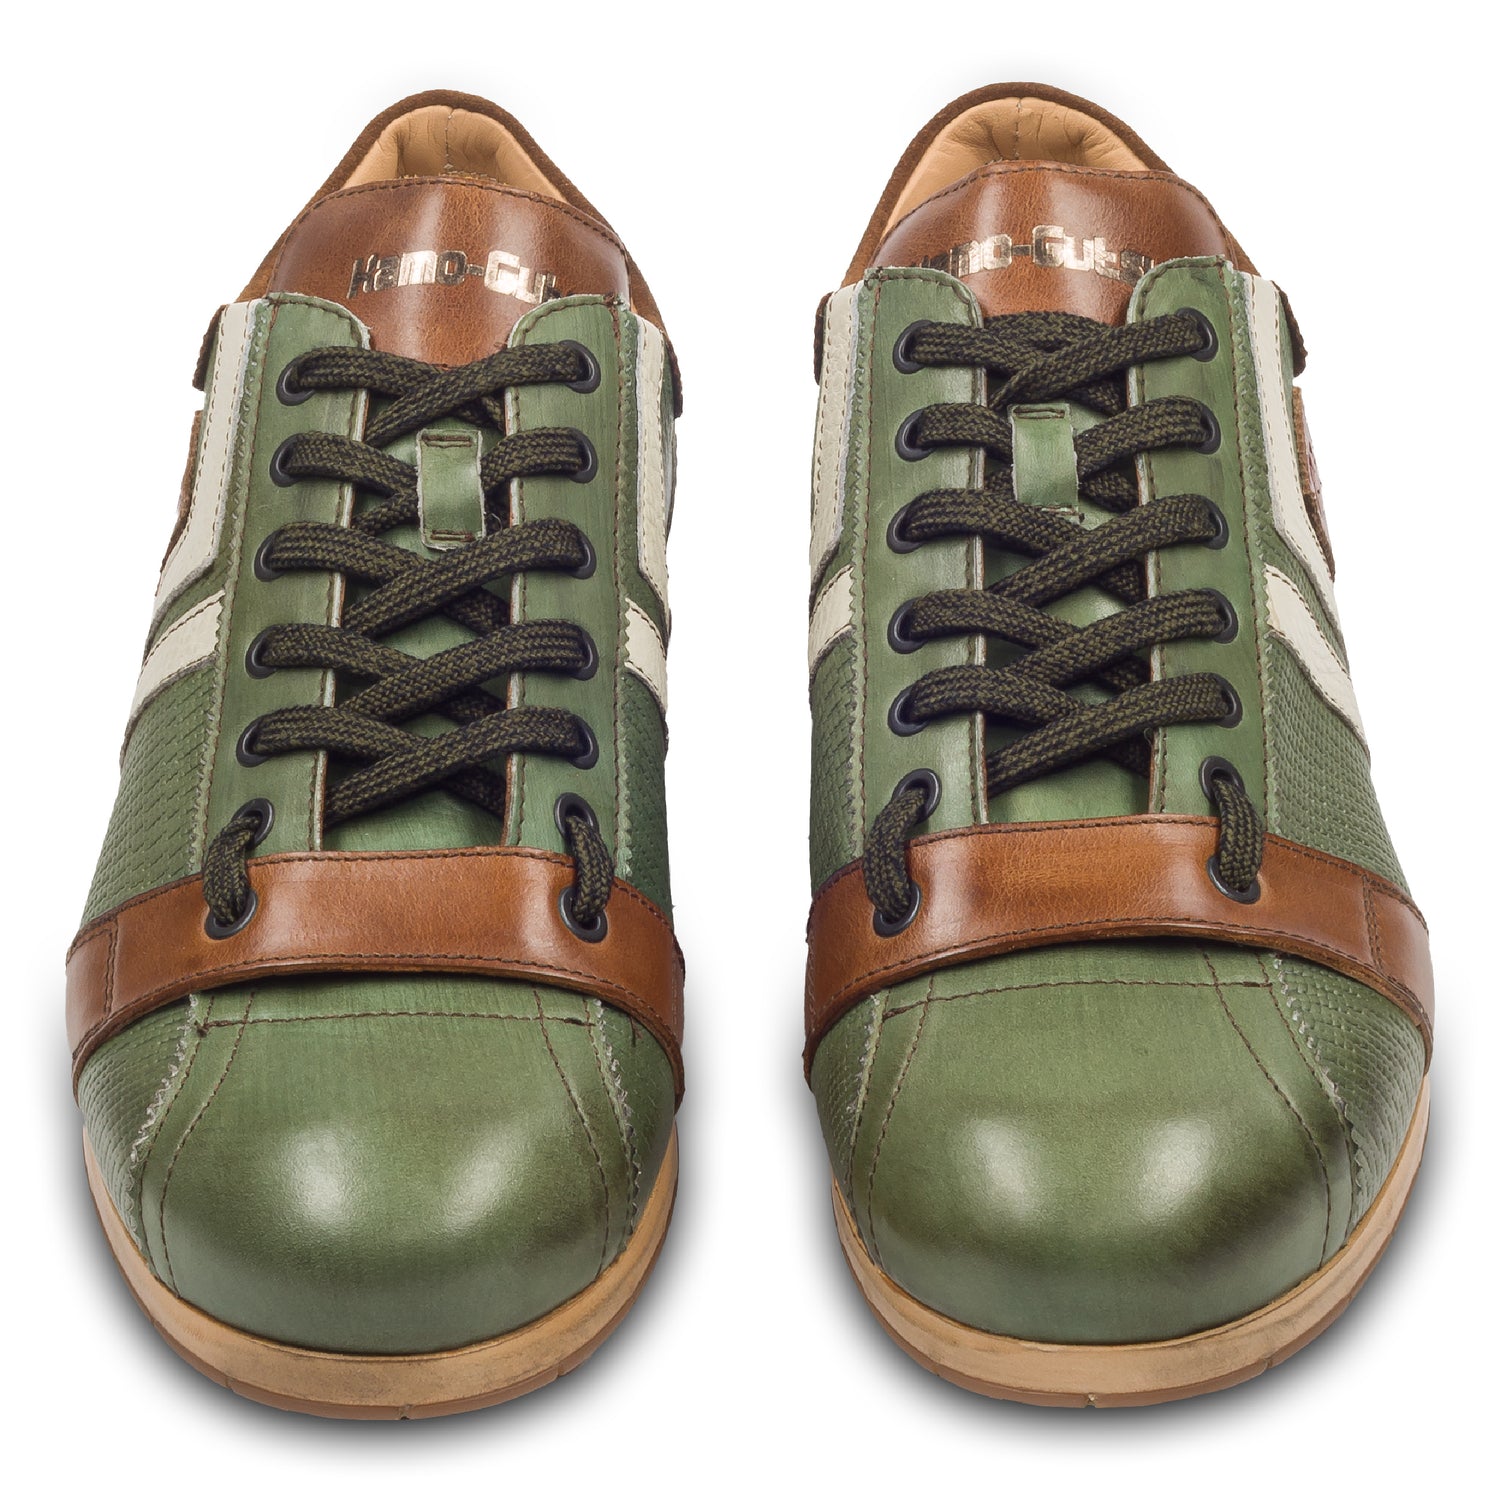 KAMO-GUTSU Sneaker, grün mit braun und weiß, paarweise Ansicht von vorne